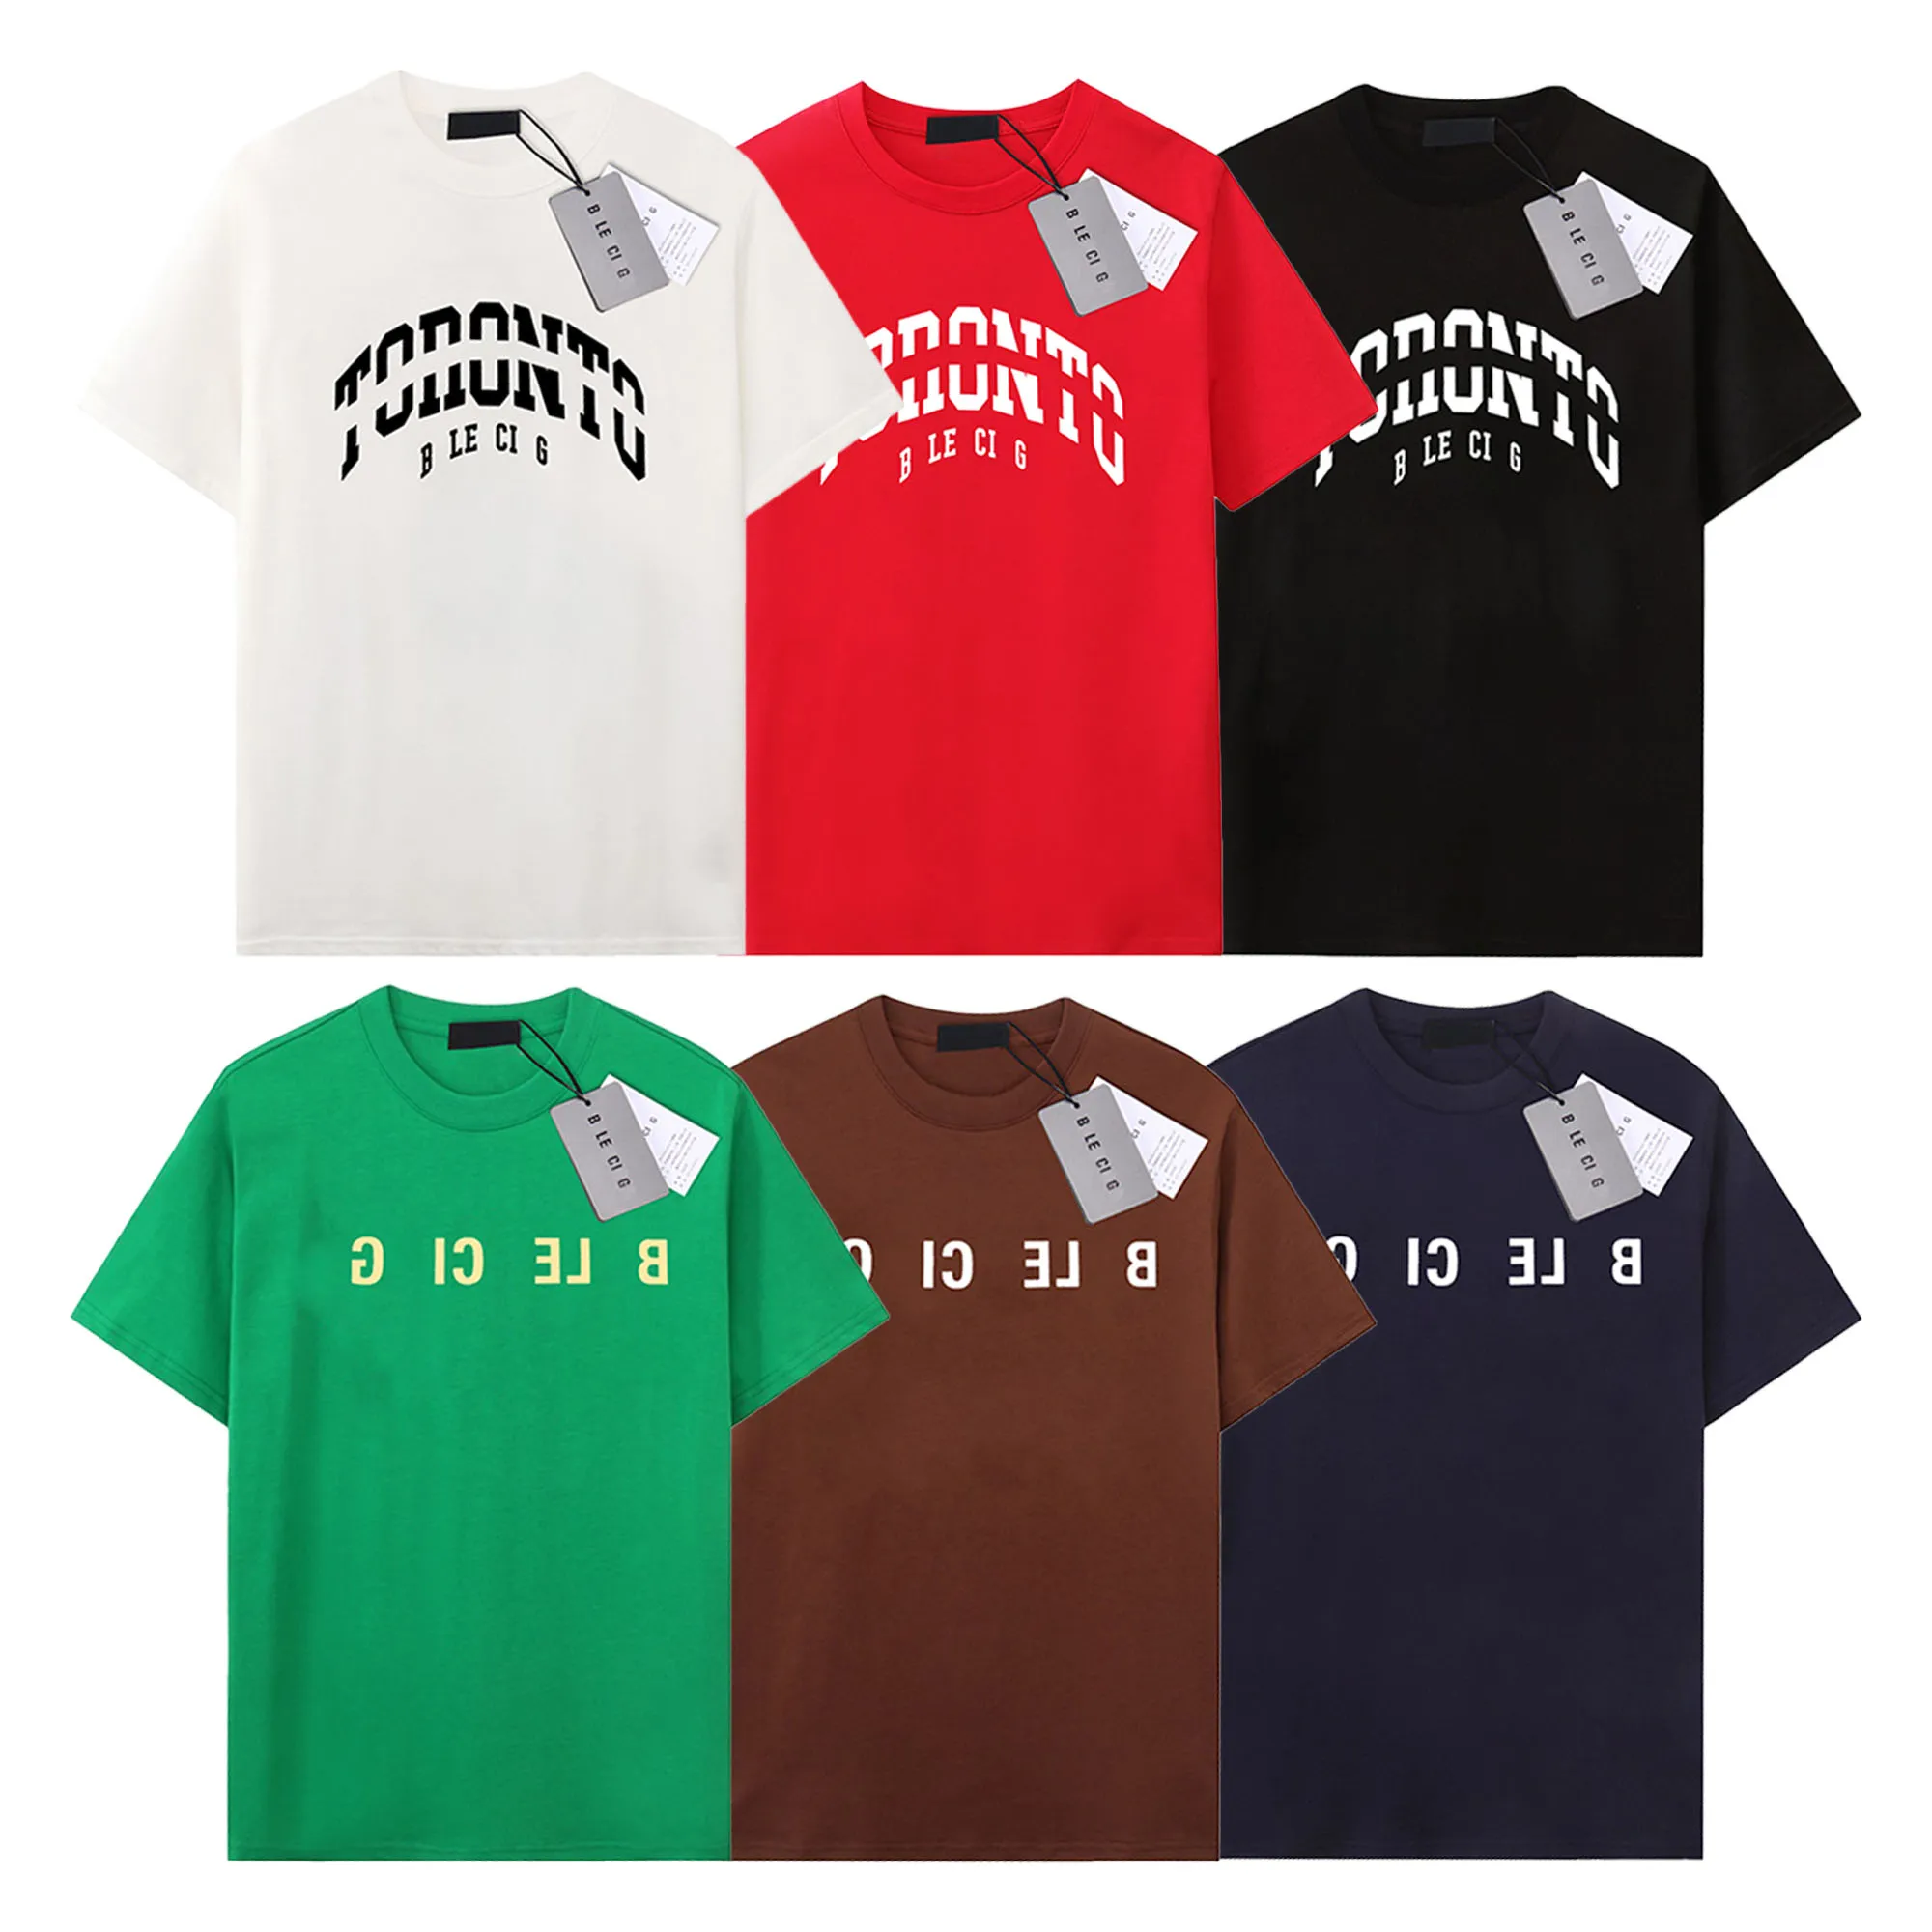 Модные мужские футболки Дизайнерские футболки Роскошные брендовые футболки Мужские женские с коротким рукавом в стиле хип-хоп Уличная одежда Топы Шорты Повседневная одежда Одежда B-13 Размер XS-XL